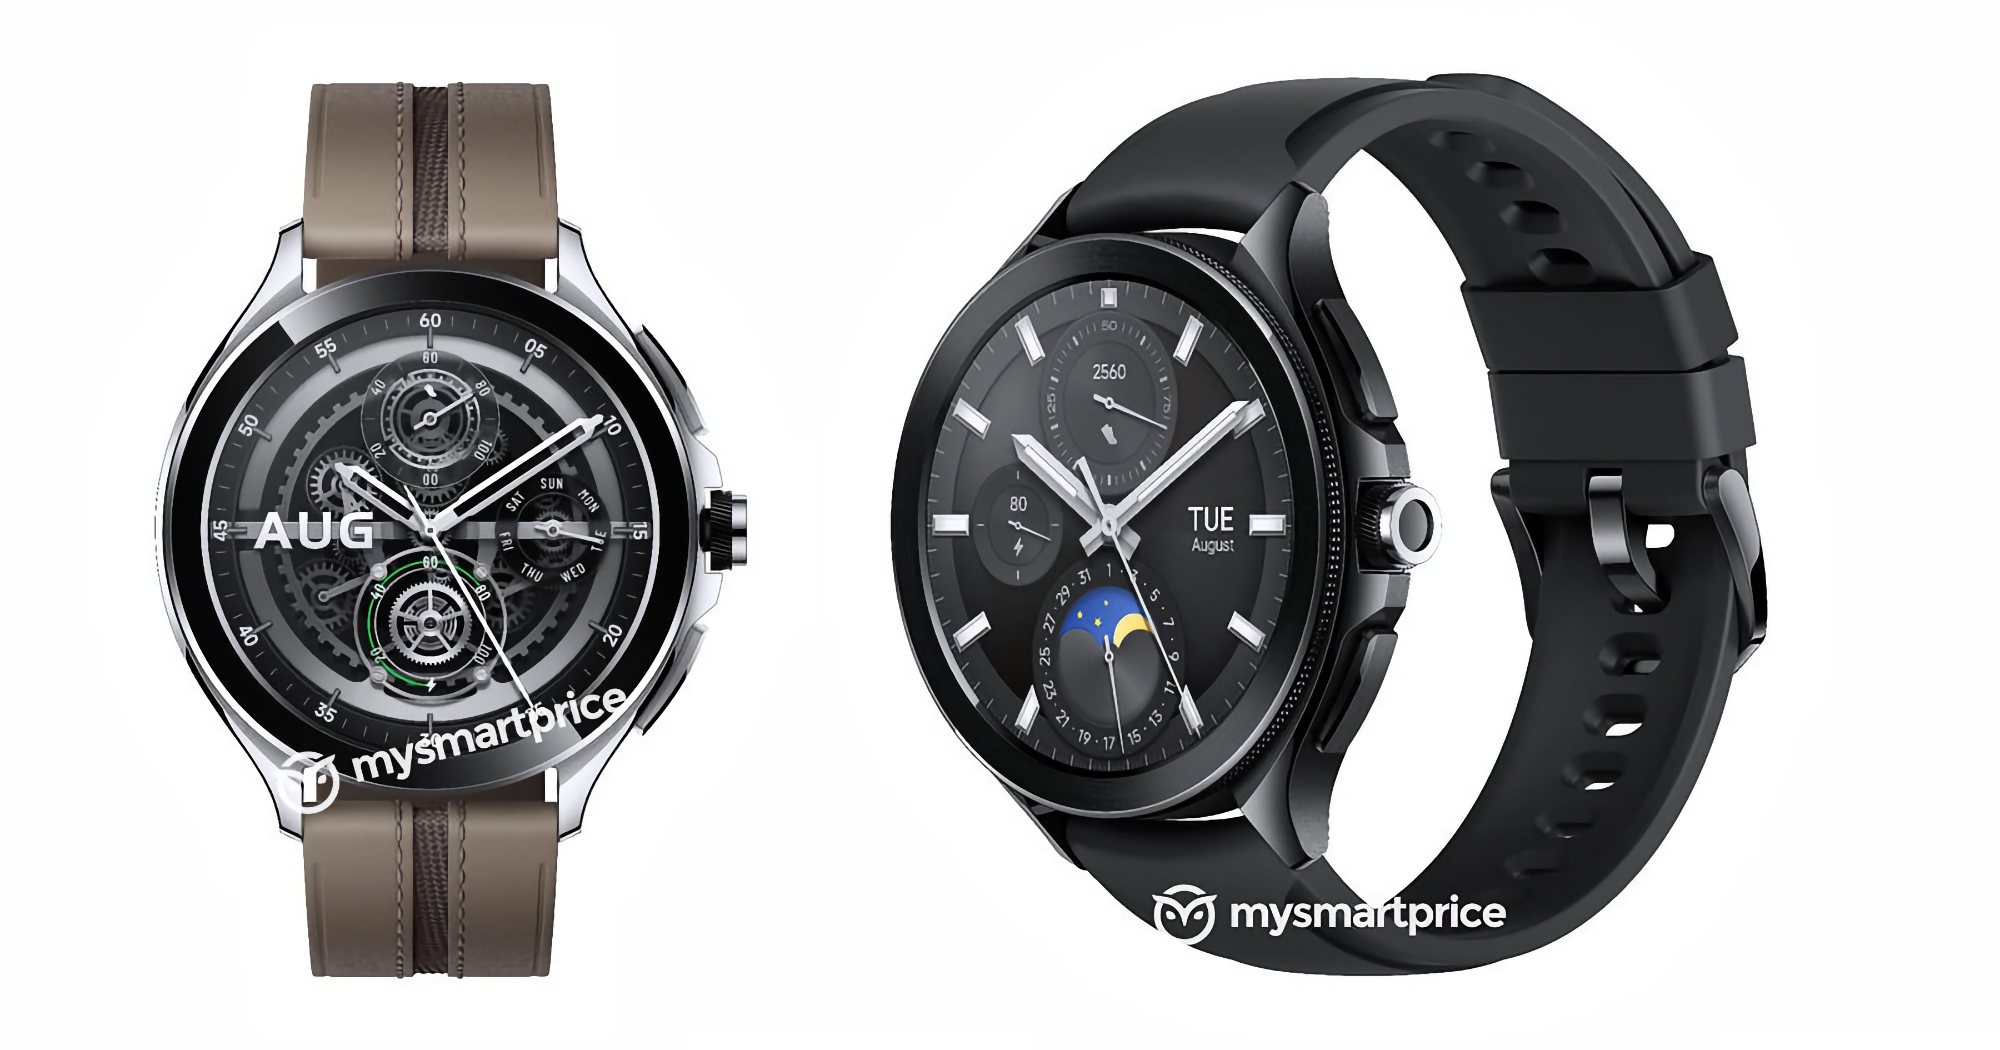 Obrotowa ramka i design przypominający Samsung Galaxy Watch 6 Classic: zdjęcia i szczegóły smartwatcha Xiaomi Watch 2 Pro pojawiły się w sieci